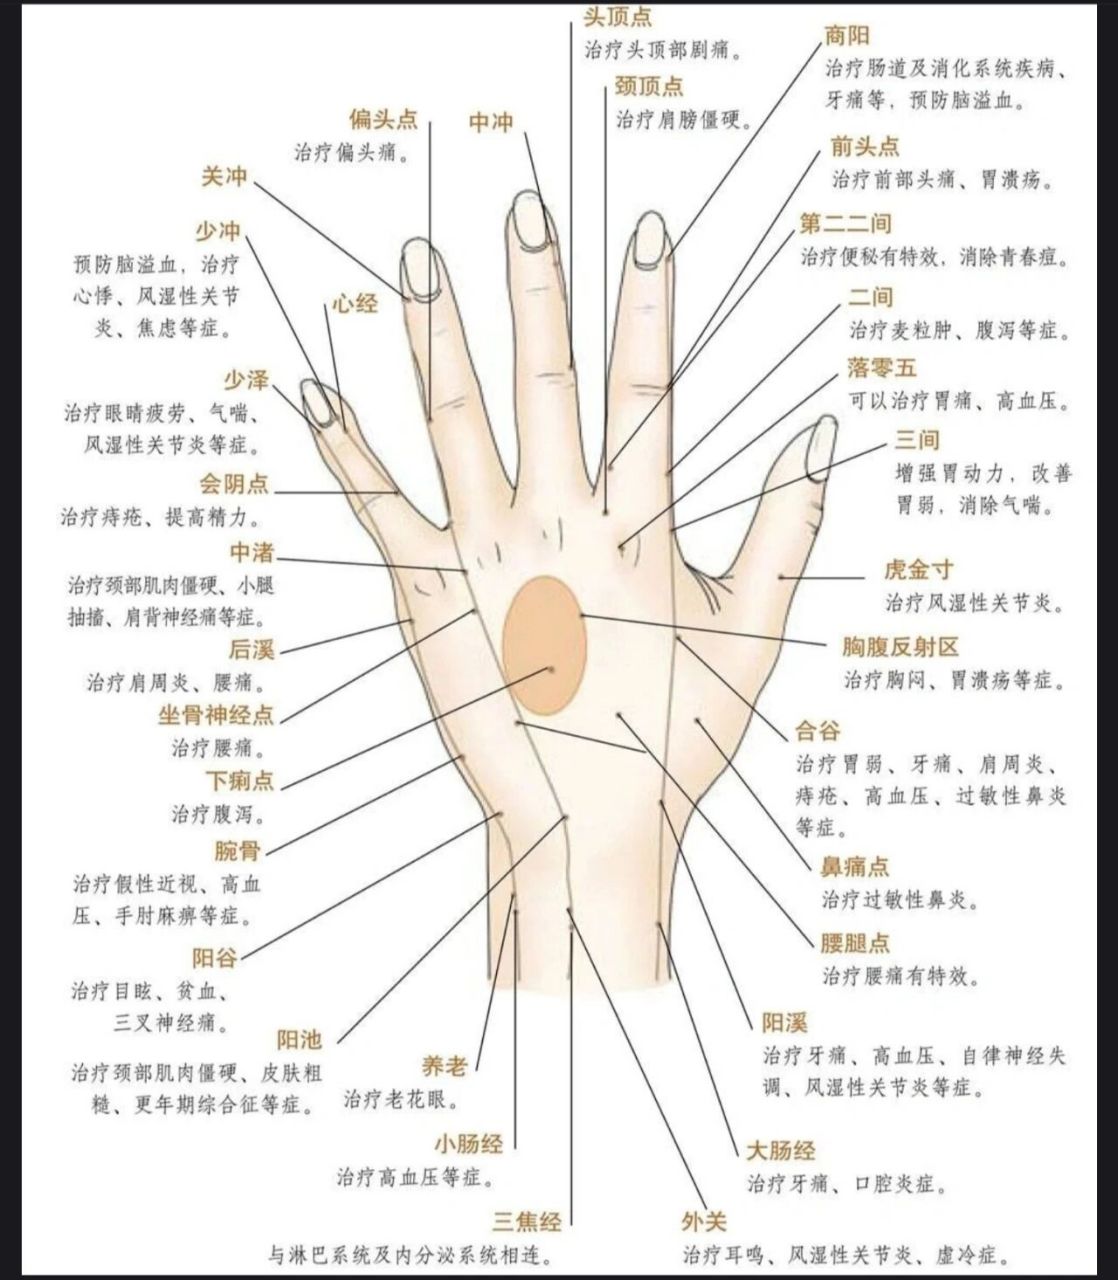 中医认为, 人的手掌上有心经,肺经和心包经3大经络,通过拍打手掌,振动